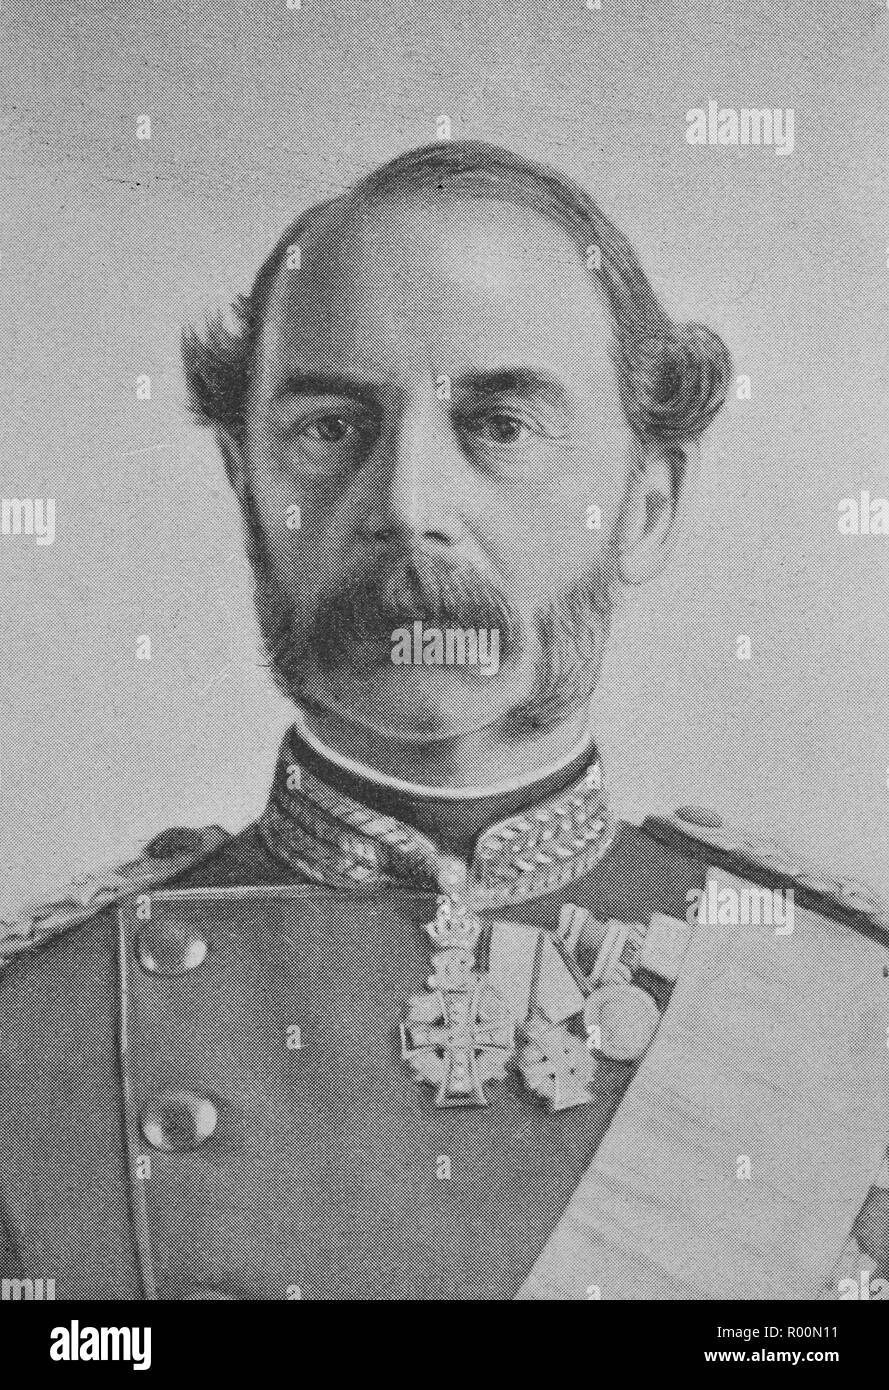 L'amélioration de la reproduction numérique, Christian IX, 1818 - 1906, fut roi de Danemark de 1863 à 1906, tirage original de l'année 1899 Banque D'Images